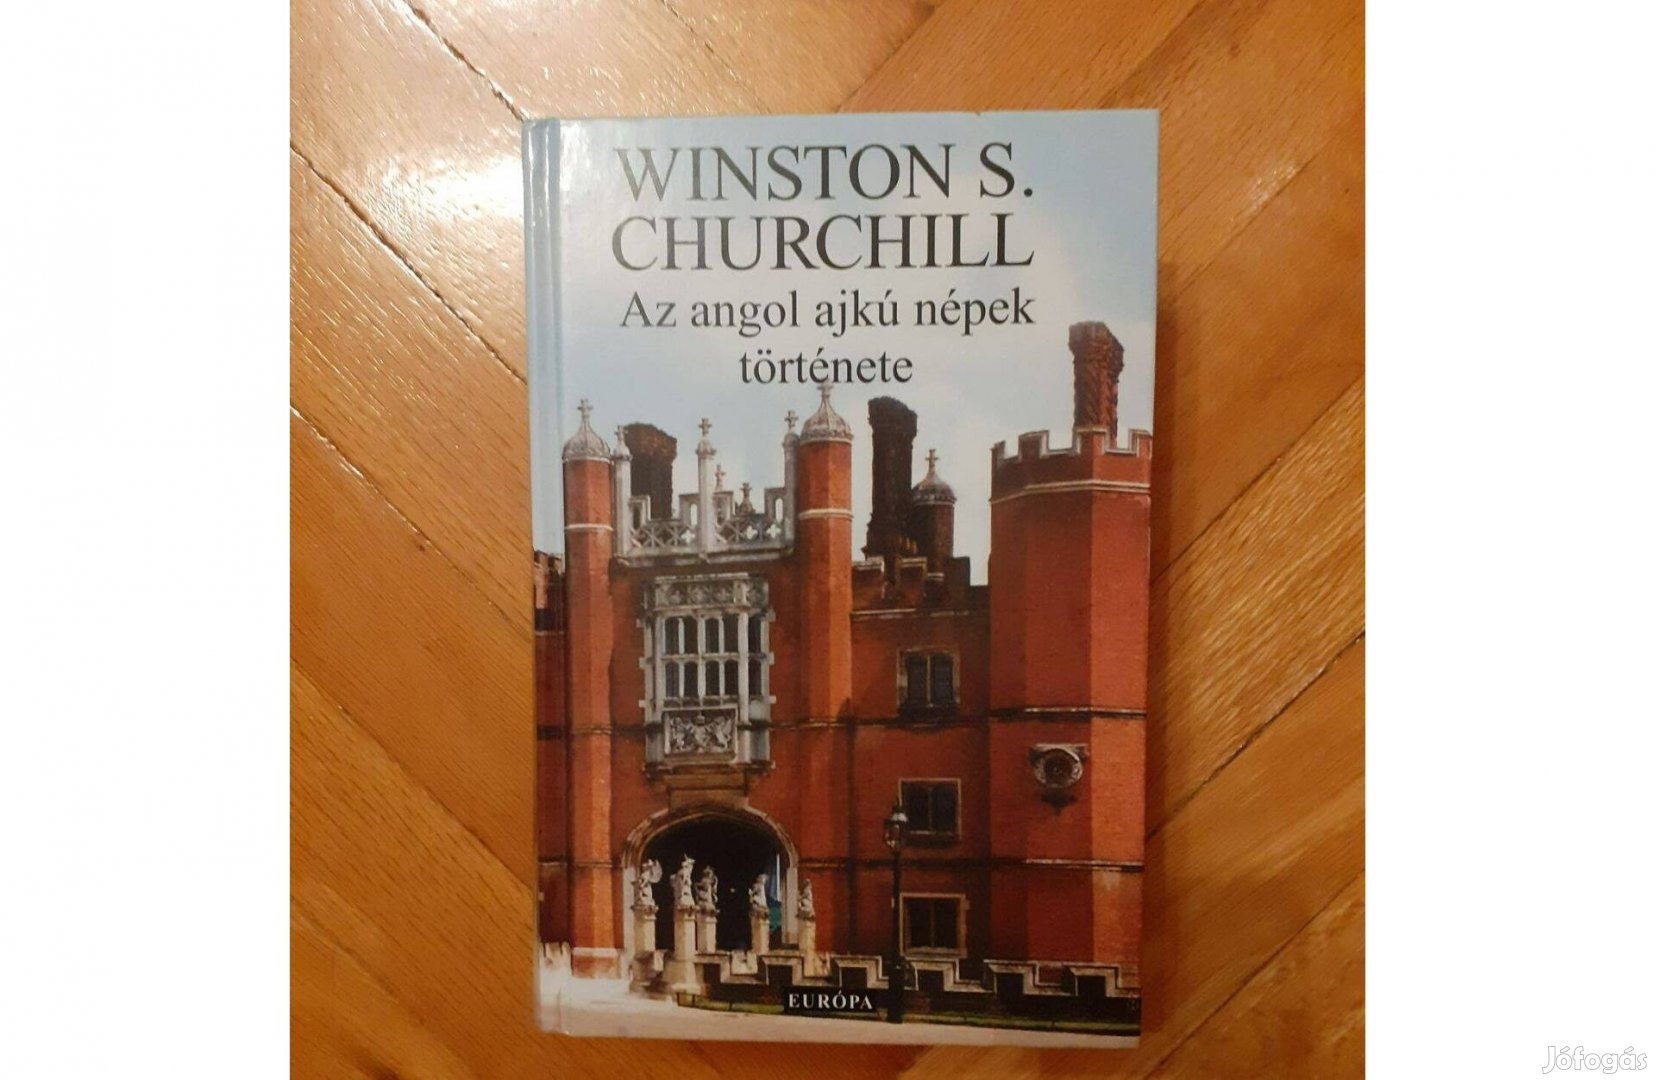 Winston S. Churchill: Az angol ajkú népek története